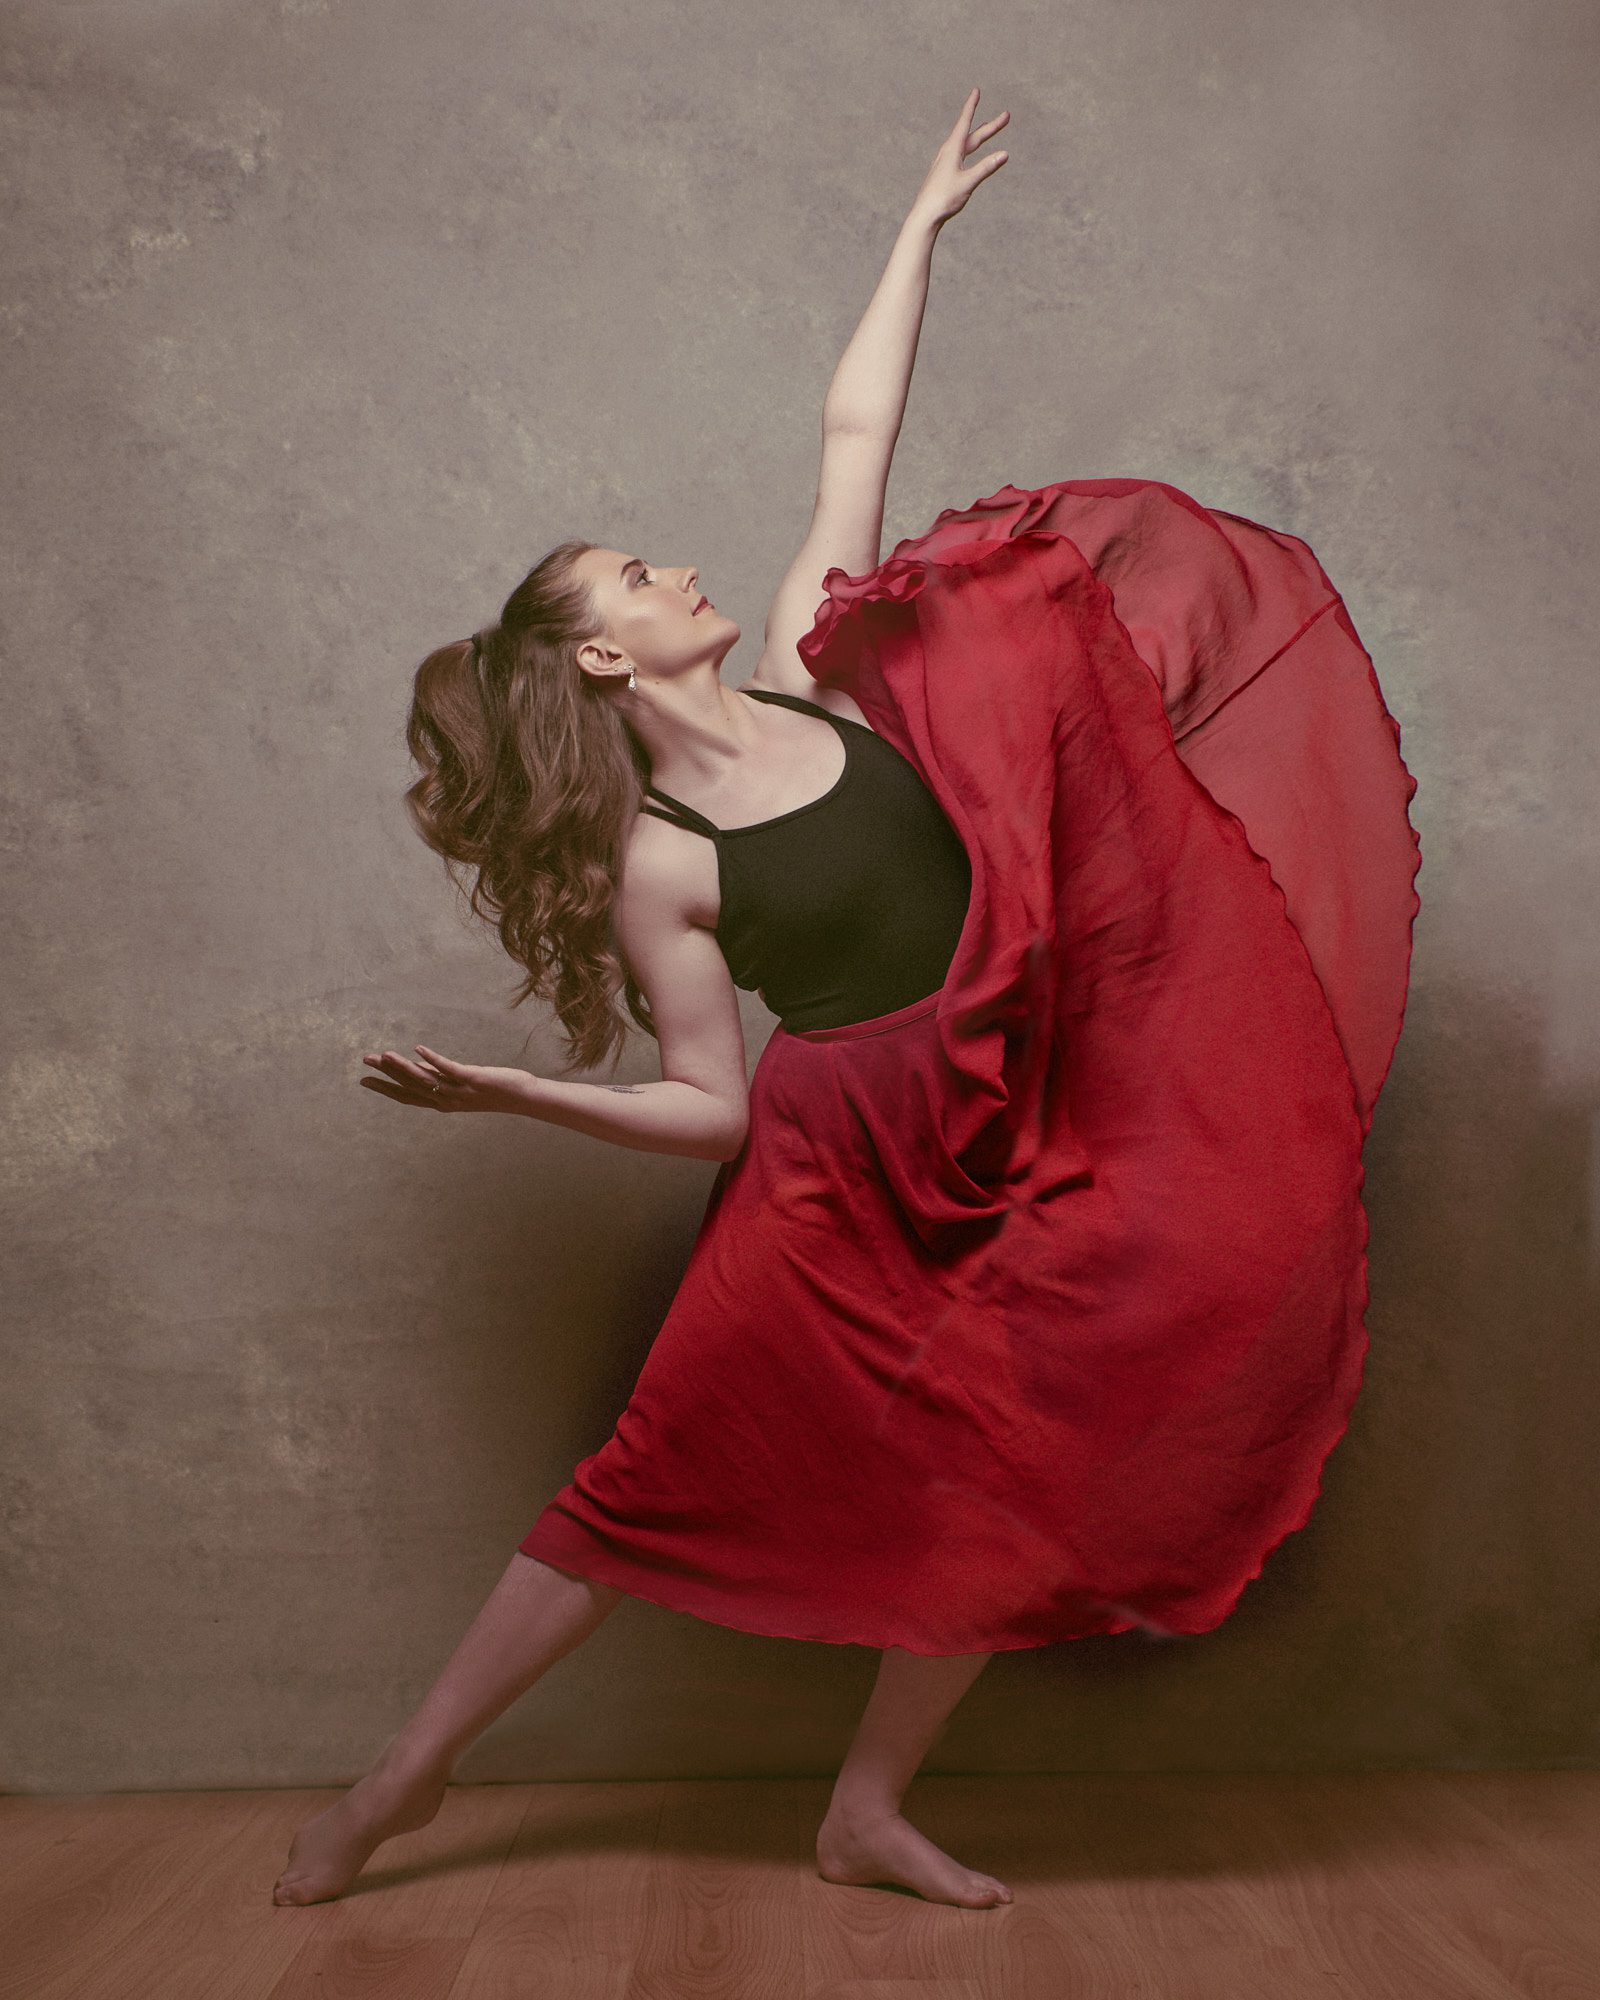 Dancer in red dress in a Surrey studio